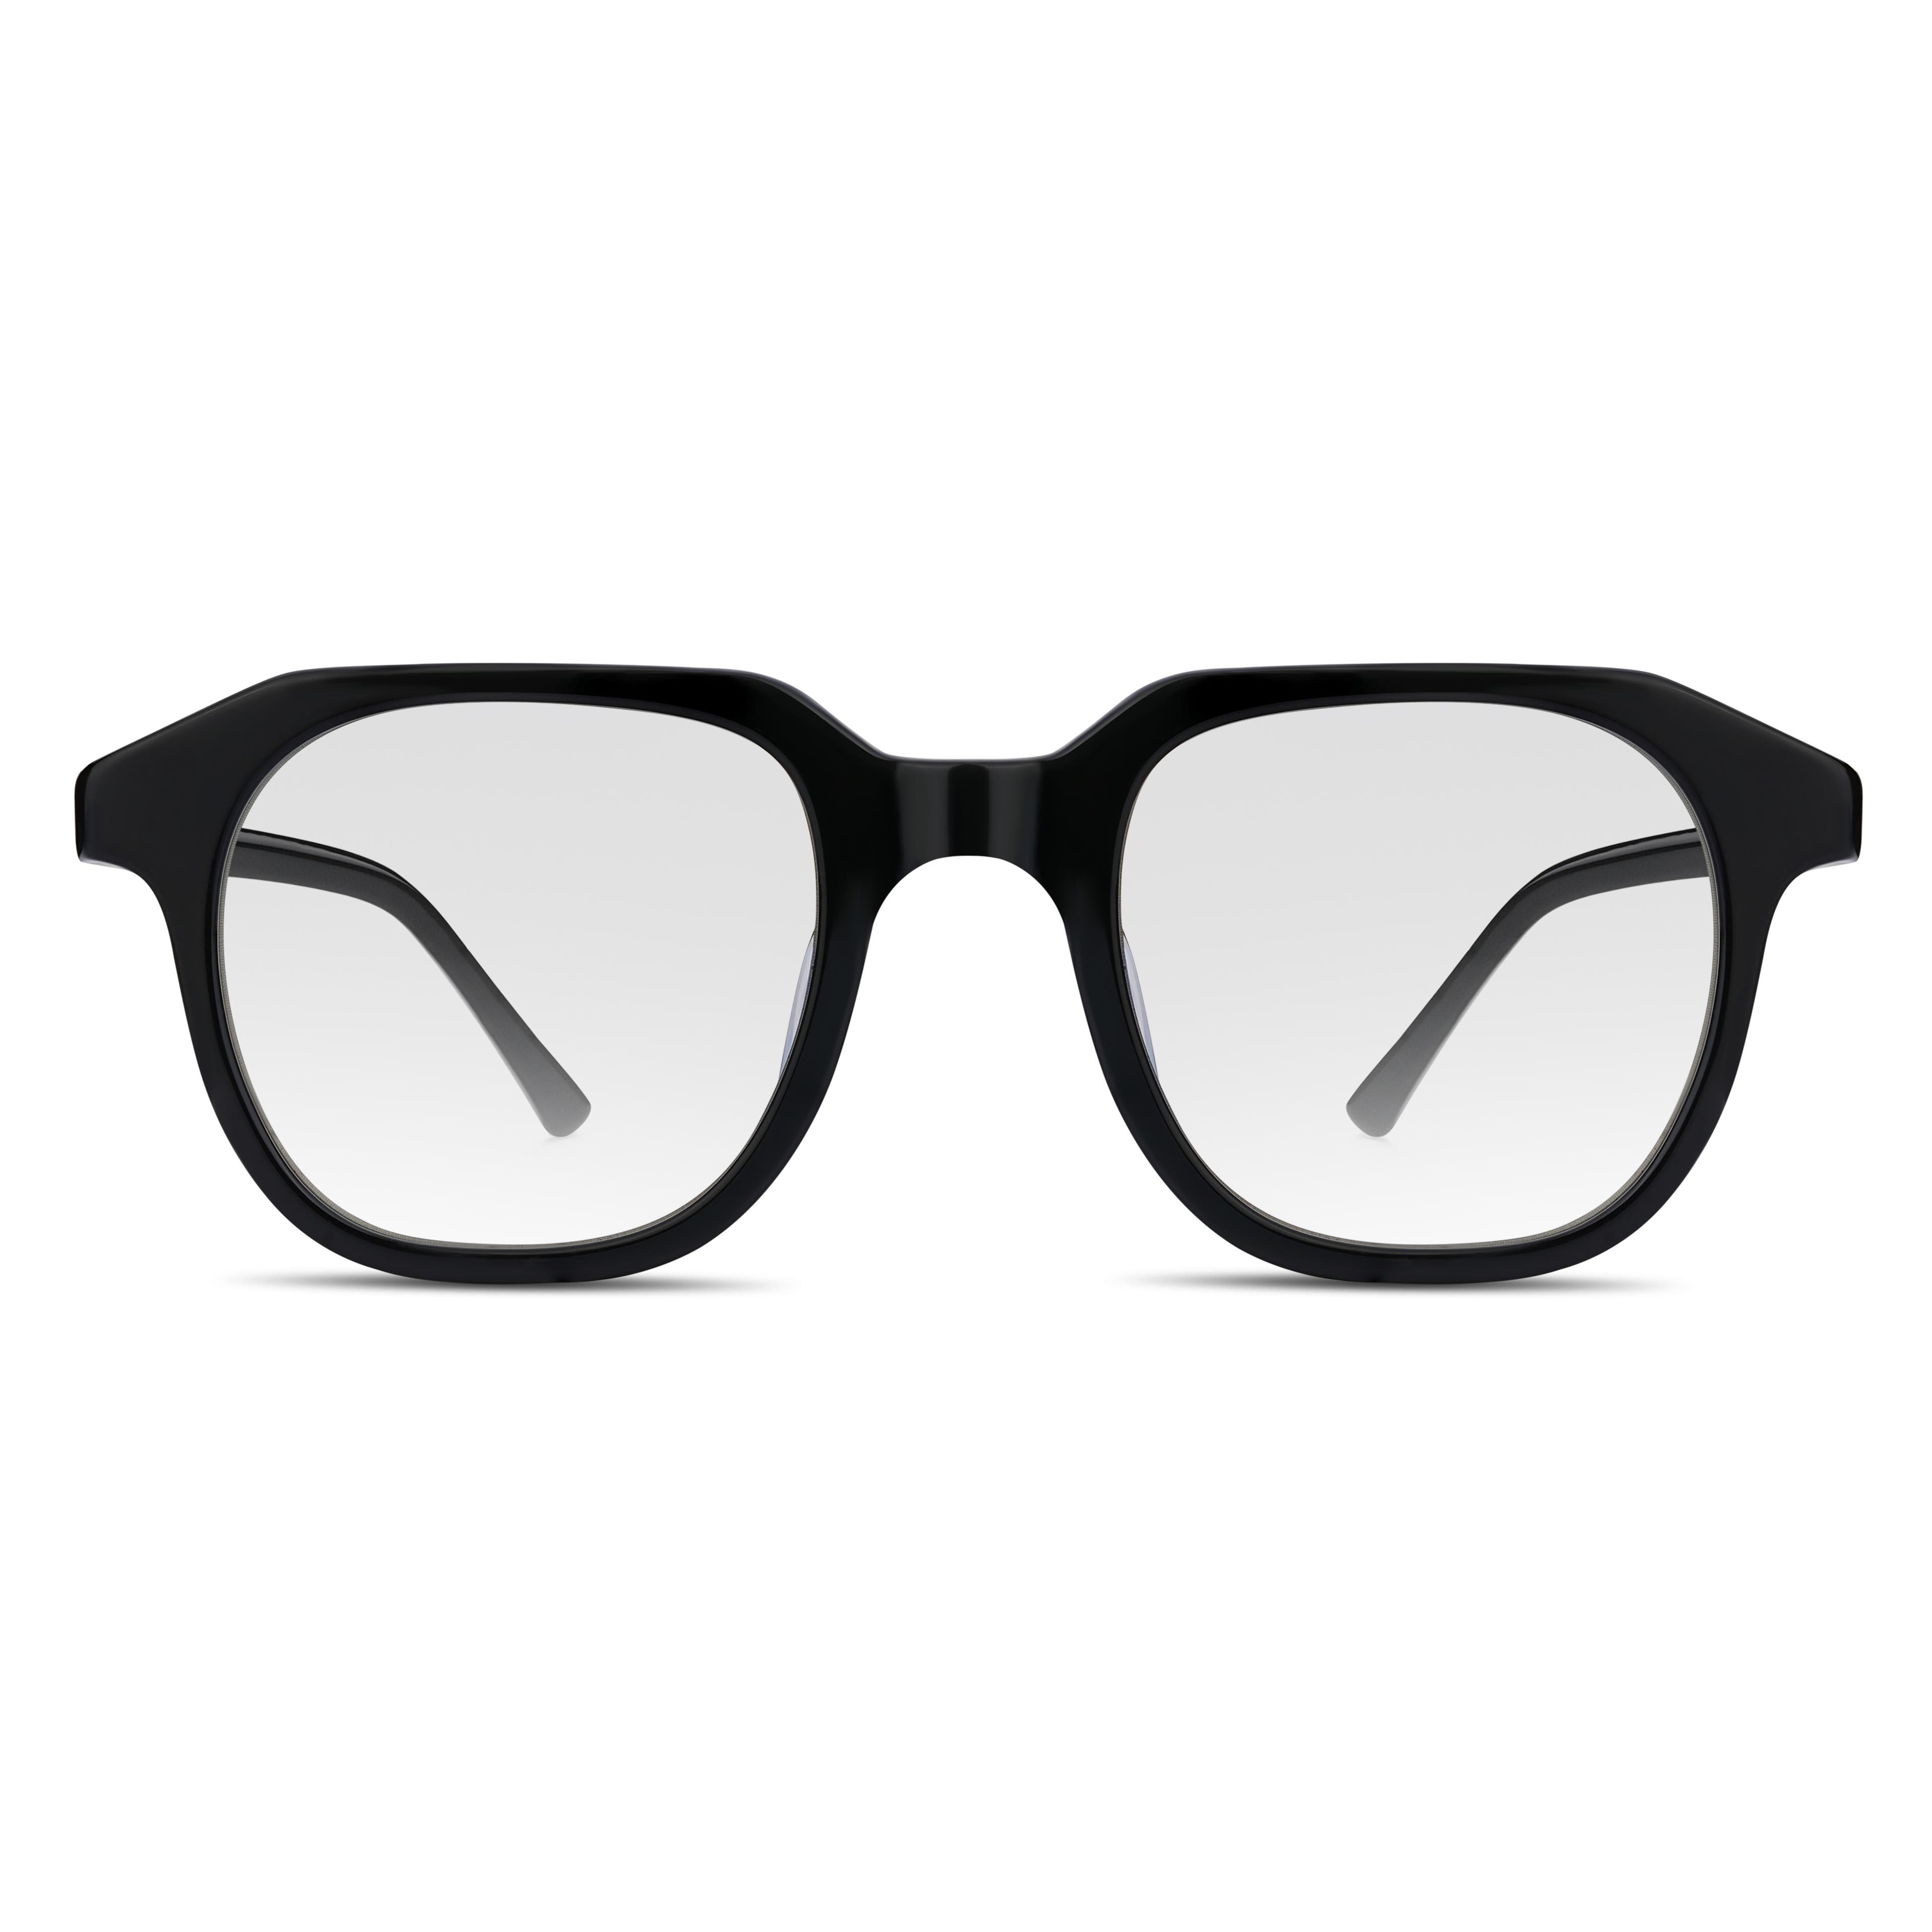 Black Geometric Horn Rimmed Clear-Lens Glasses